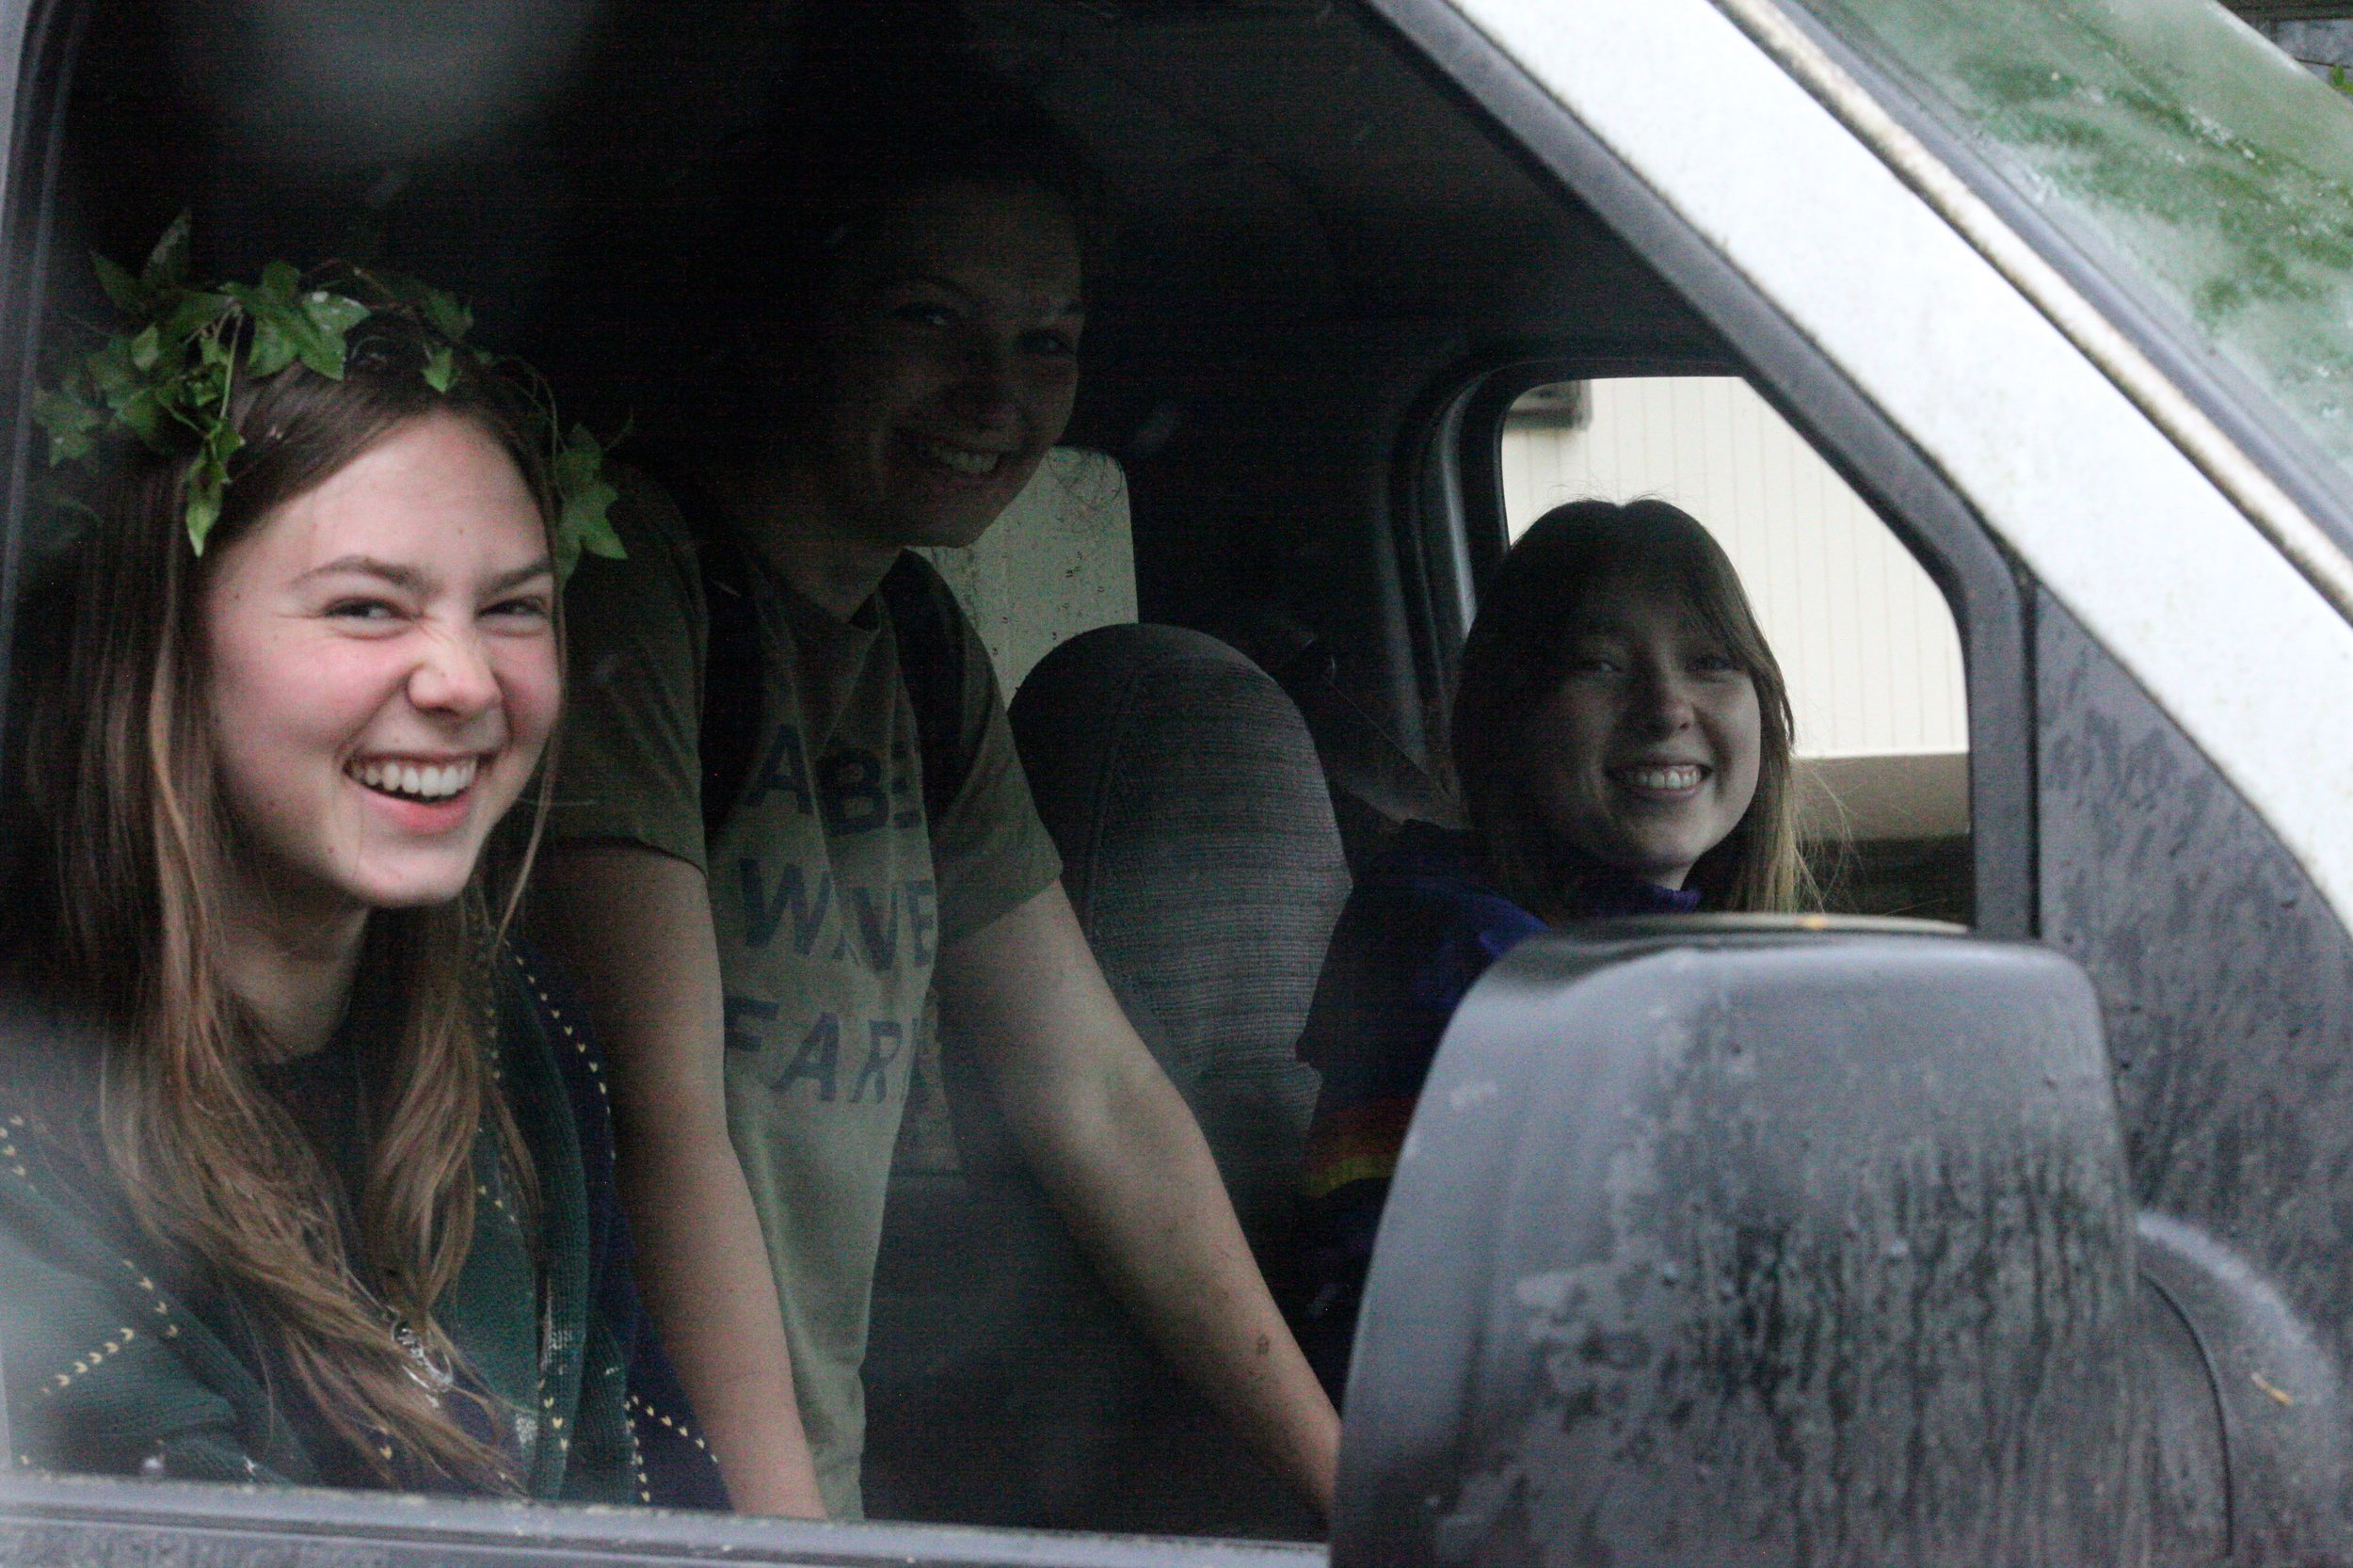 Neko Heinrich, Phoebe Weignberg and Eleanor Sanford smile from the Maintenance van